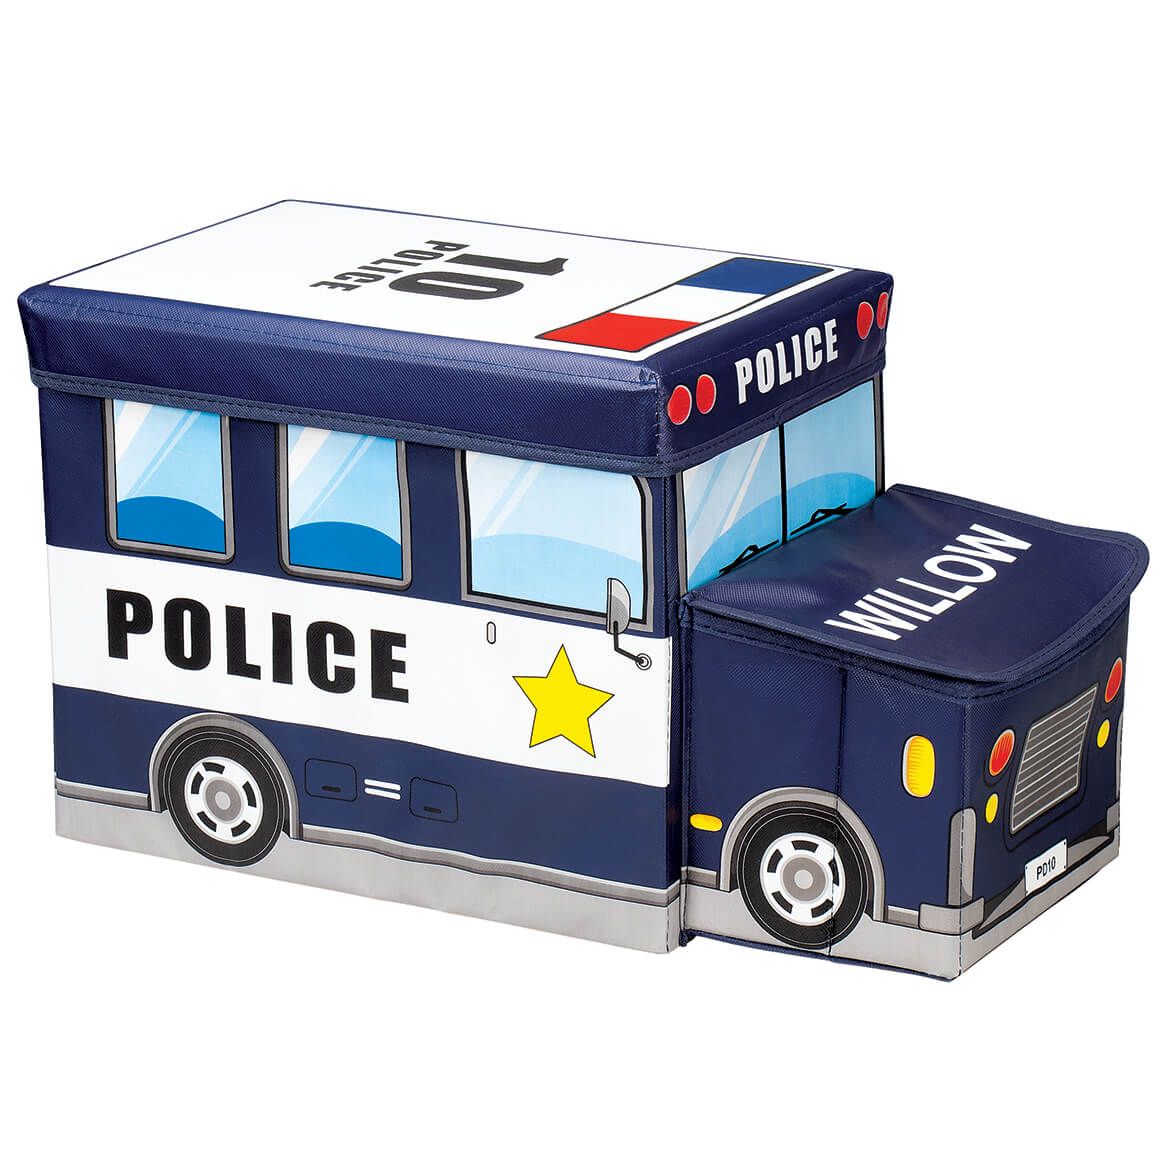 Personalized Police Car Storage Box + '-' + 371455